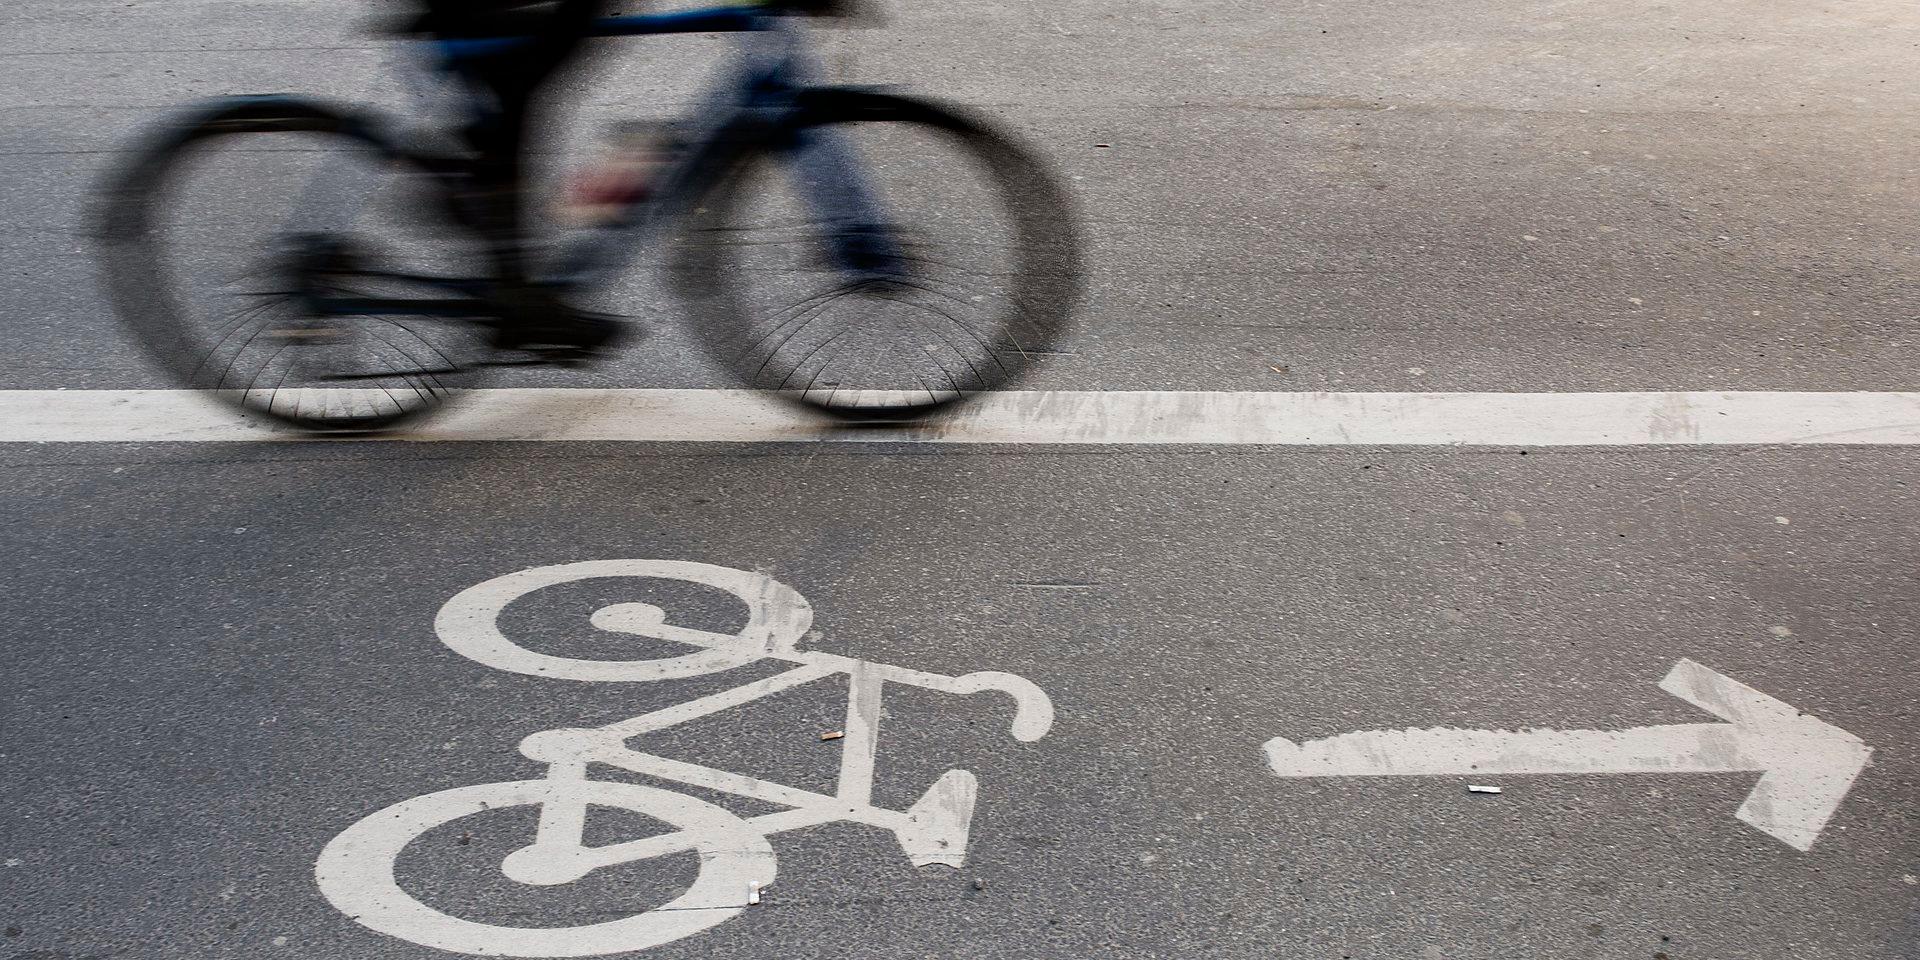 En cykelbana blir enkelriktad endast om skyltar anger det. Märkningen i asfalten pekar bara ut 'lämplig' färdriktning.